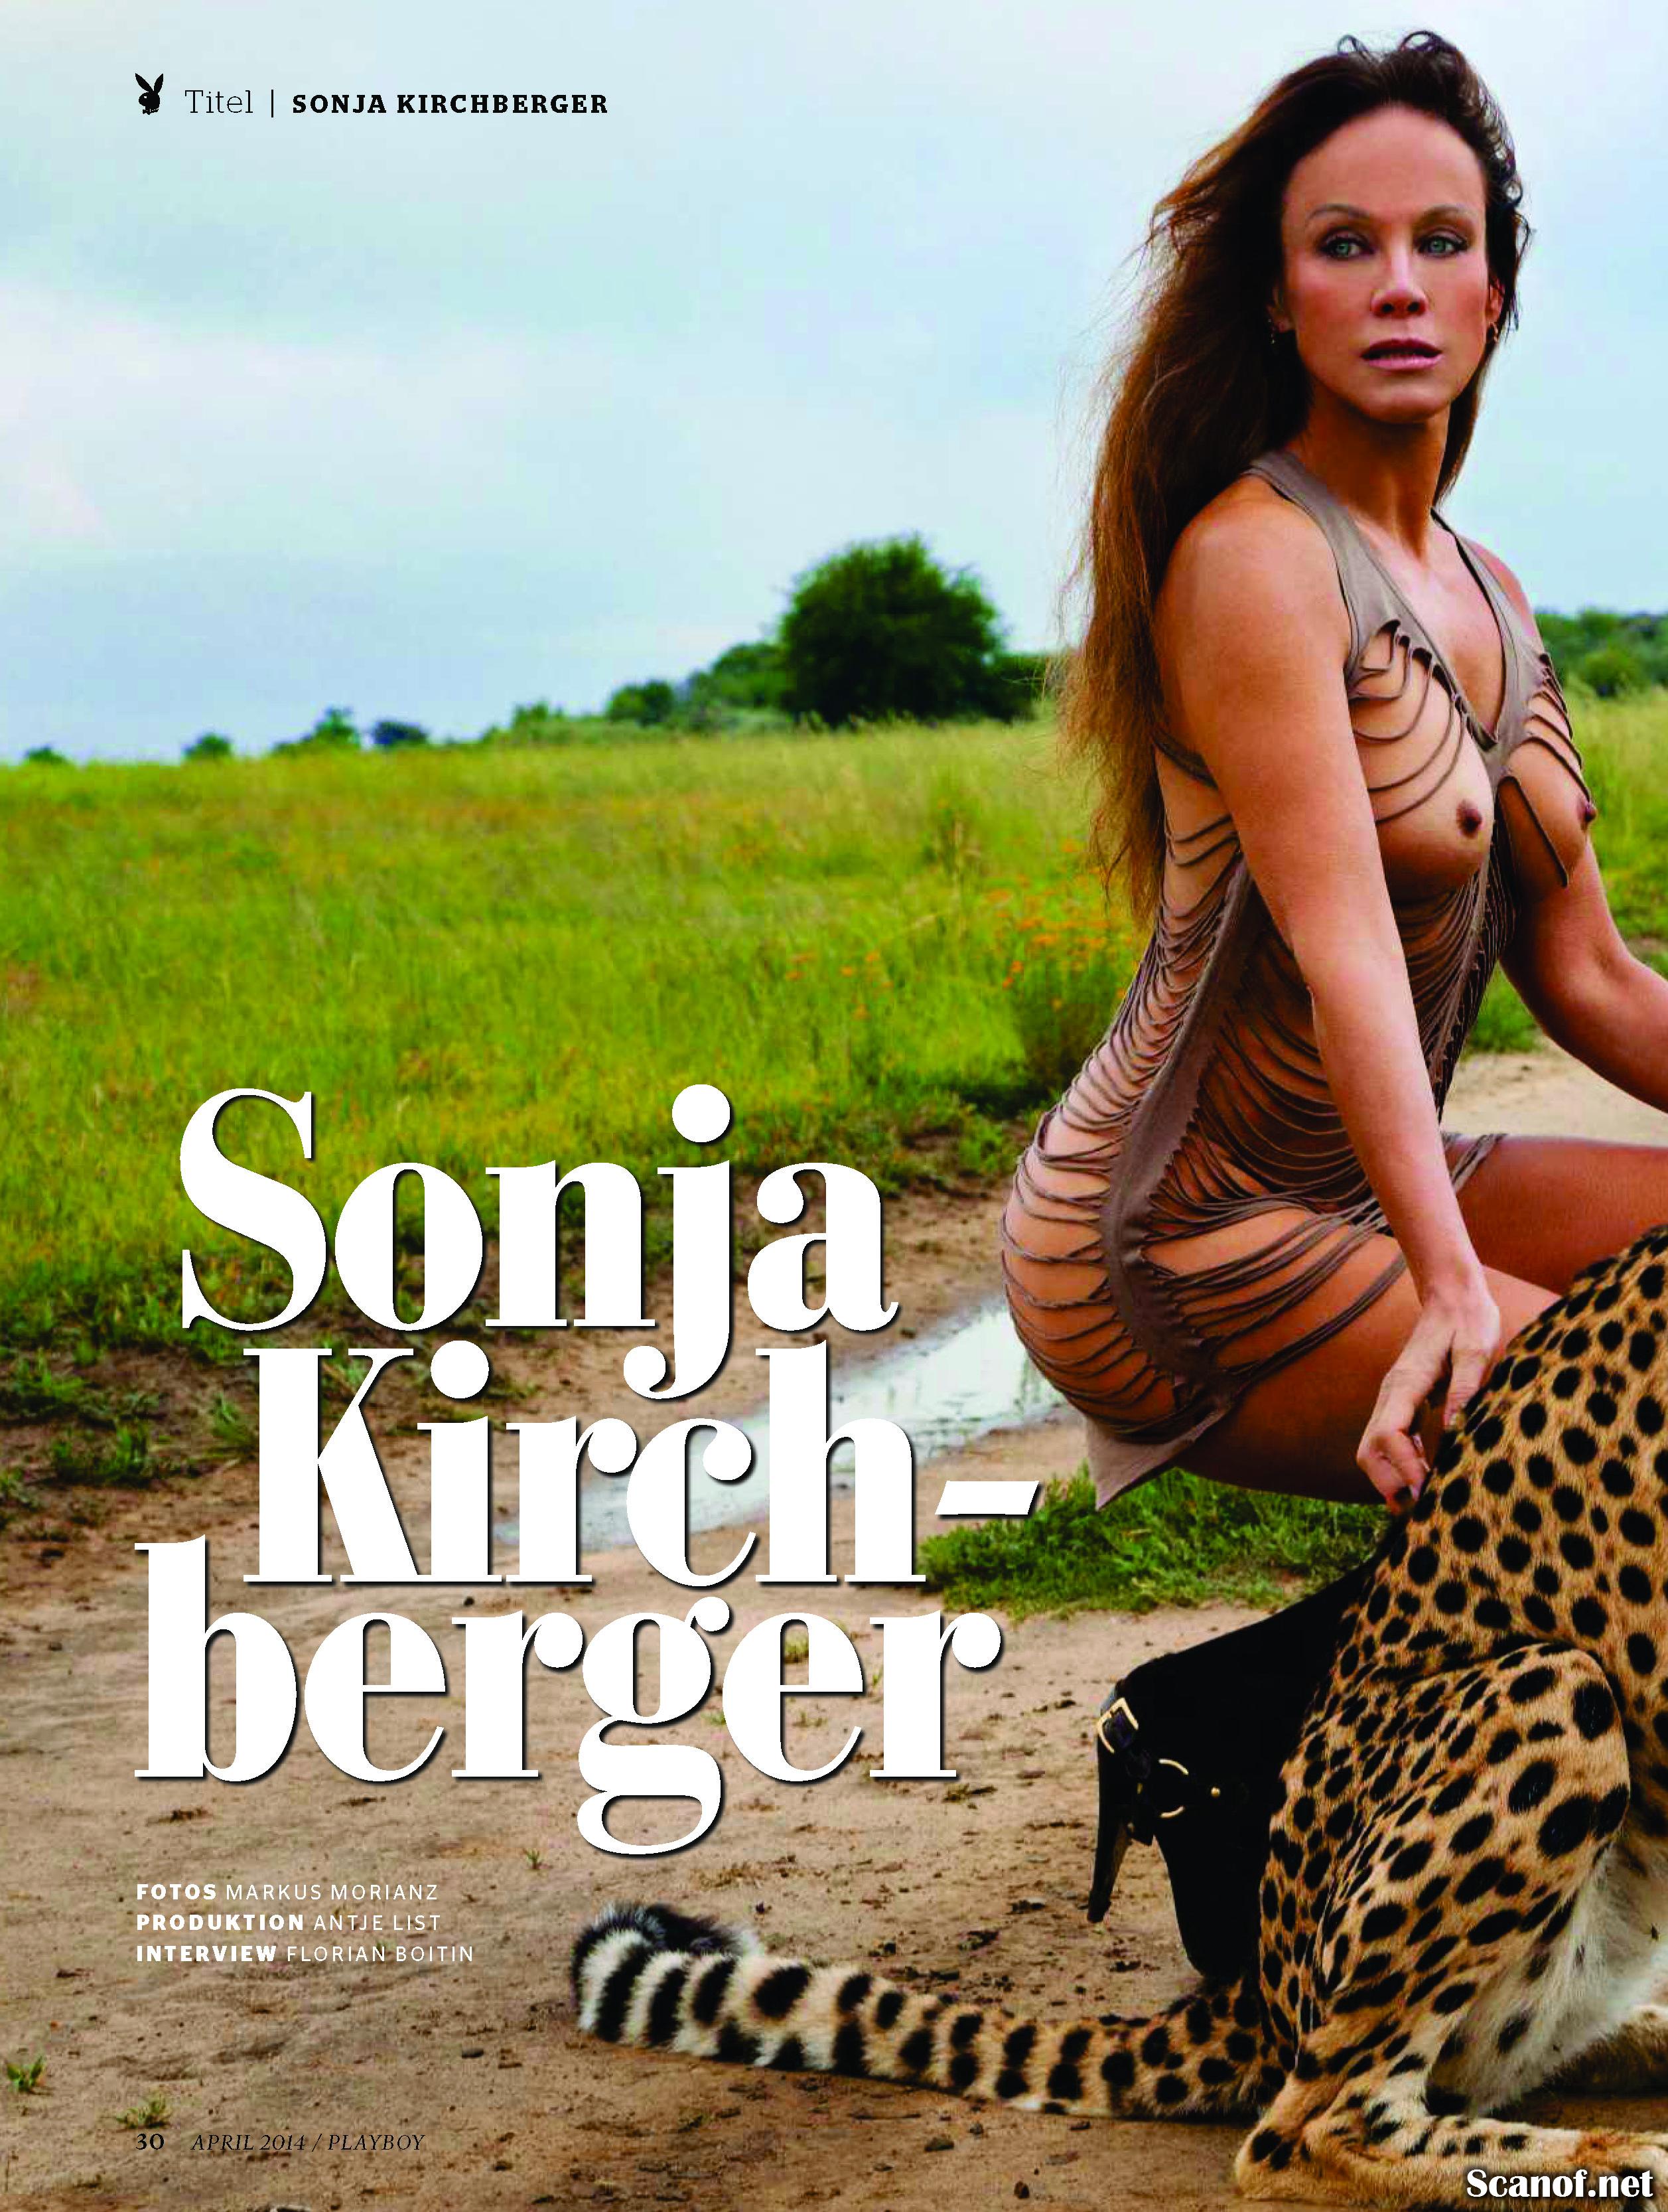 Sonja kirchberger nackt playboy